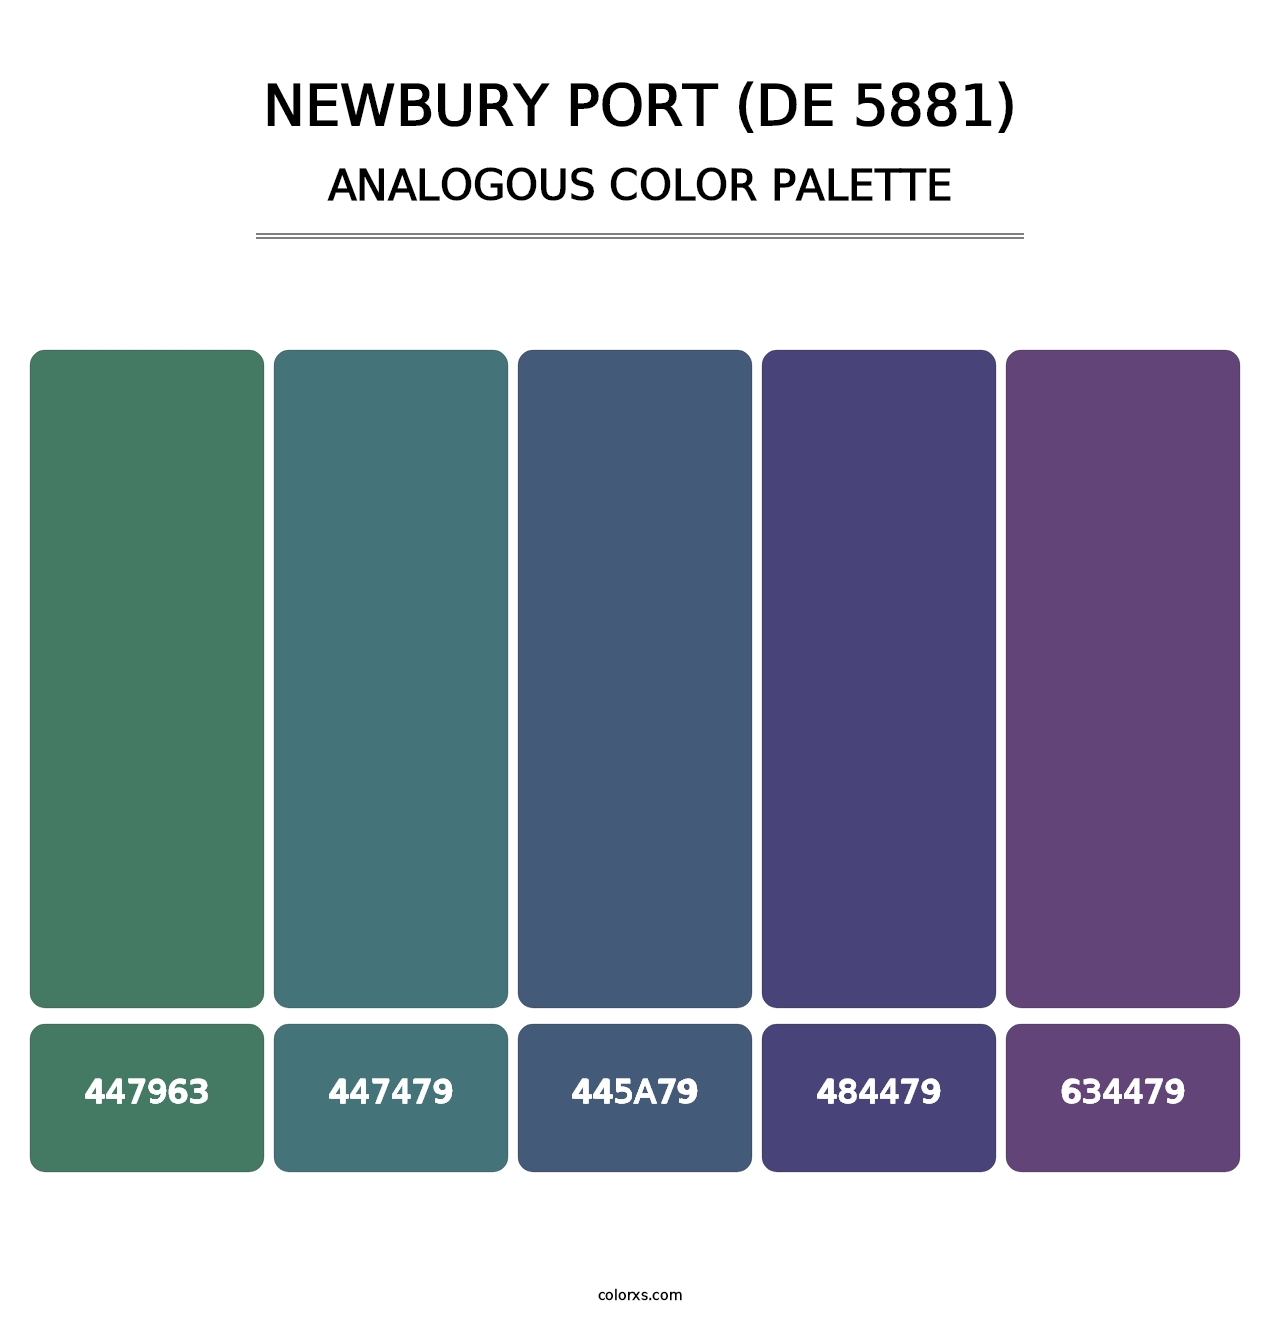 Newbury Port (DE 5881) - Analogous Color Palette